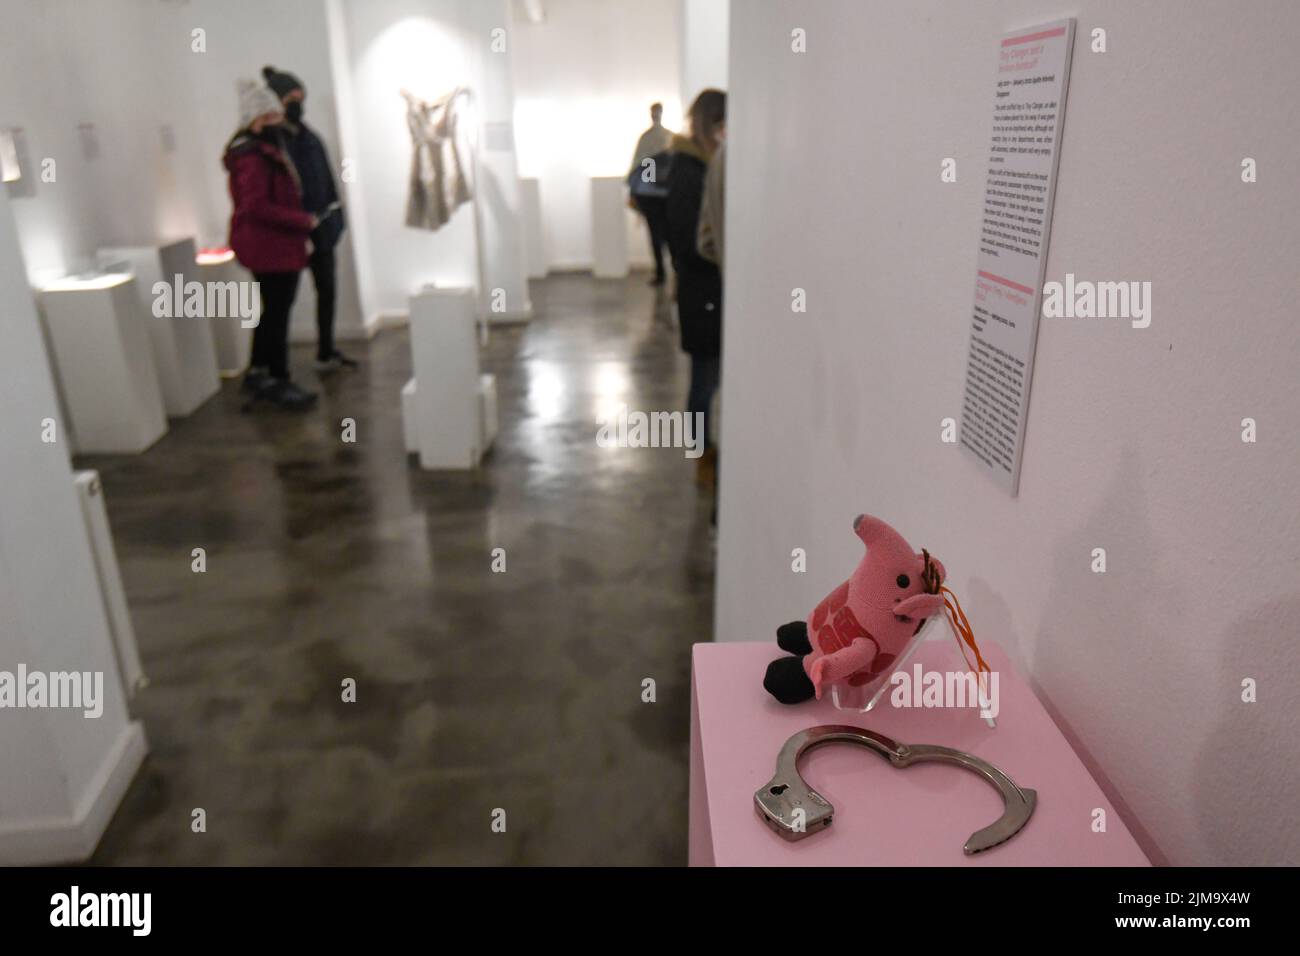 Museo de las relaciones rotas: Esposas y juguete de cerdo de peluche. Zagreb, Croacia Foto de stock